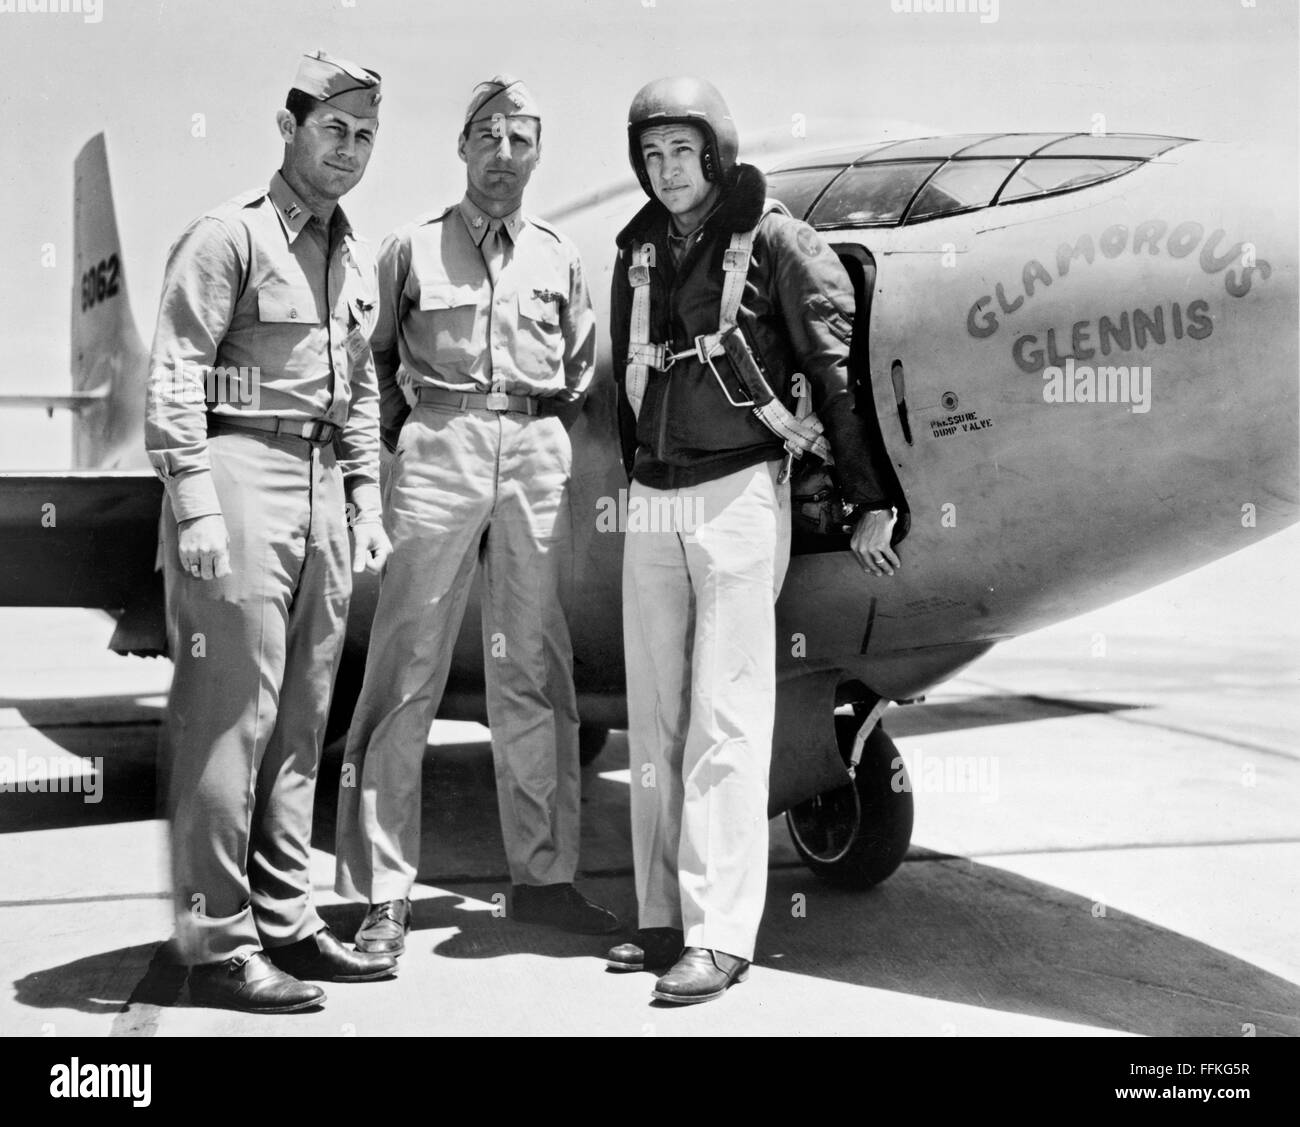 Glamorous Glennis. Le Bell X-1 'Glamorous Glennis' avec, de gauche à droite, le Capitaine Chuck Yeager, le Major Gus Lundquist et le capitaine James Fitzgerald. Photo c.1947-1948 Banque D'Images